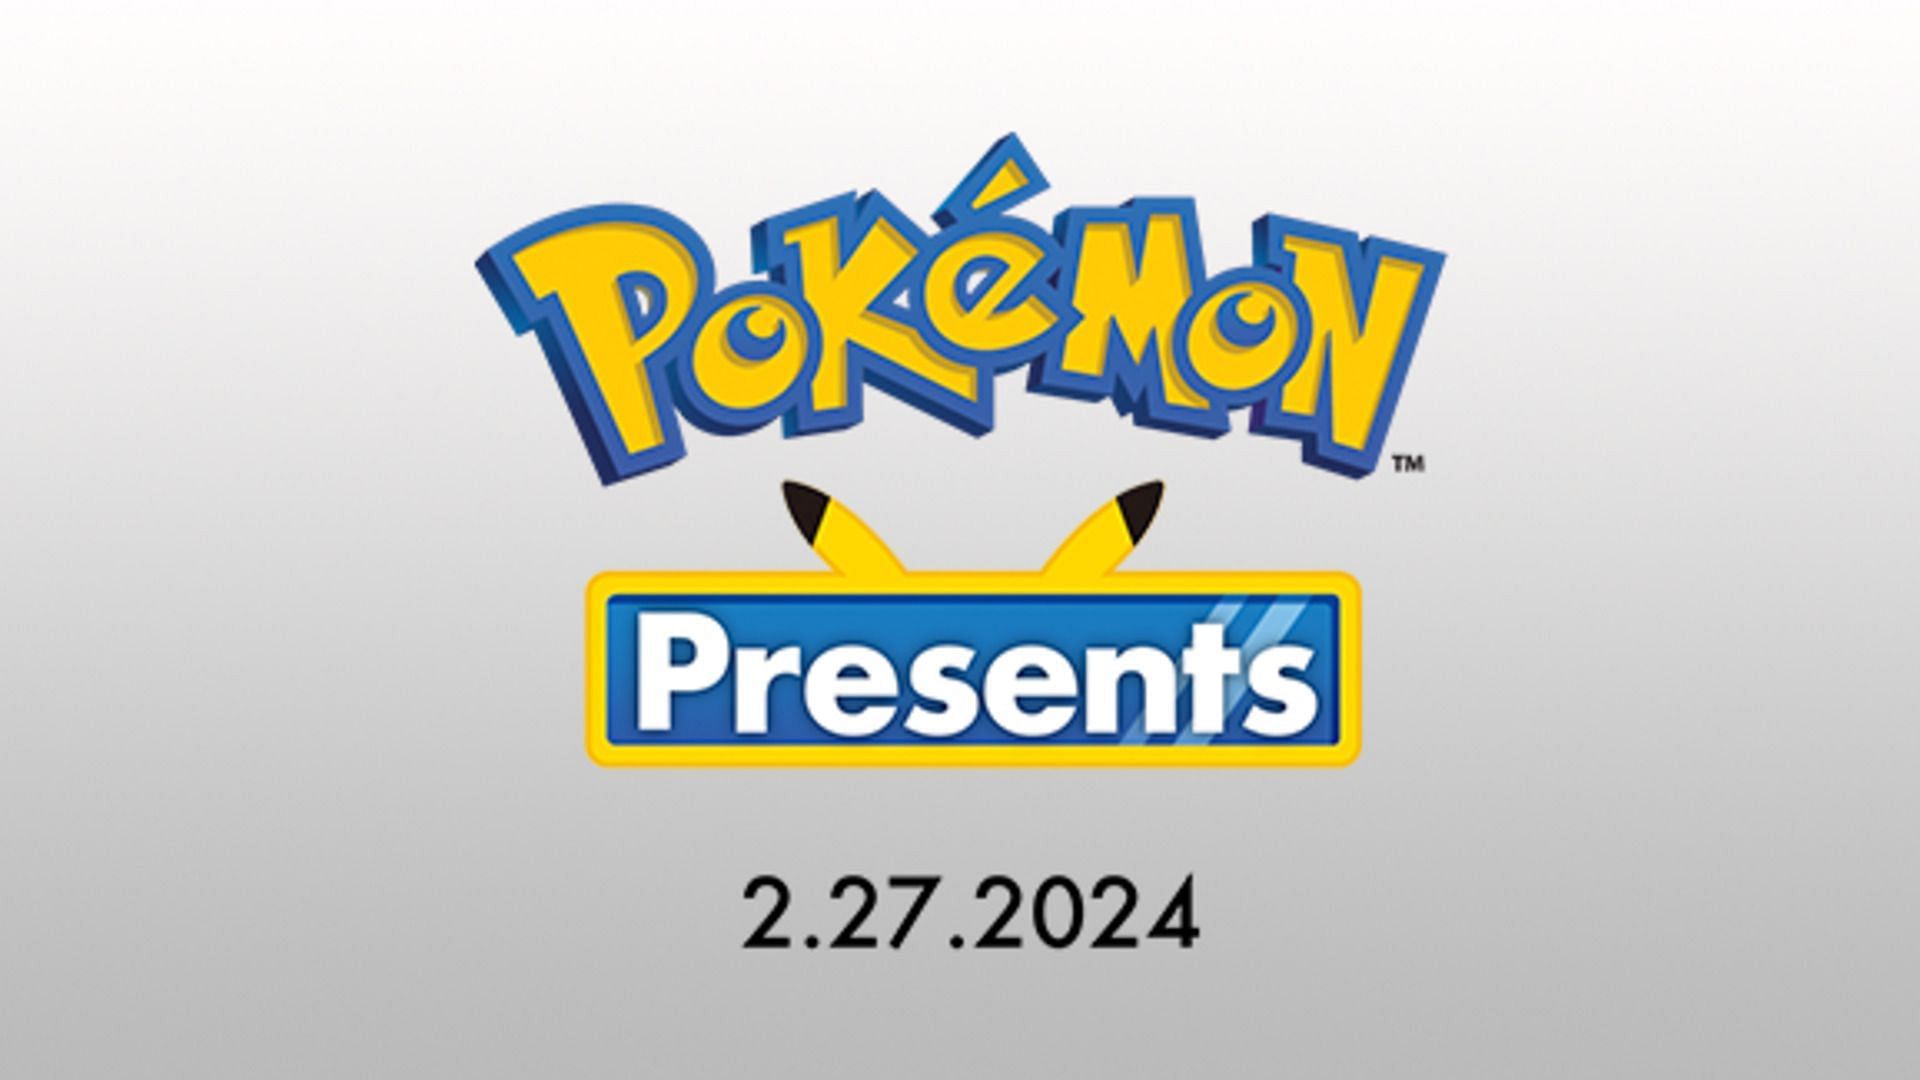 Official artwork for Pokemon Day